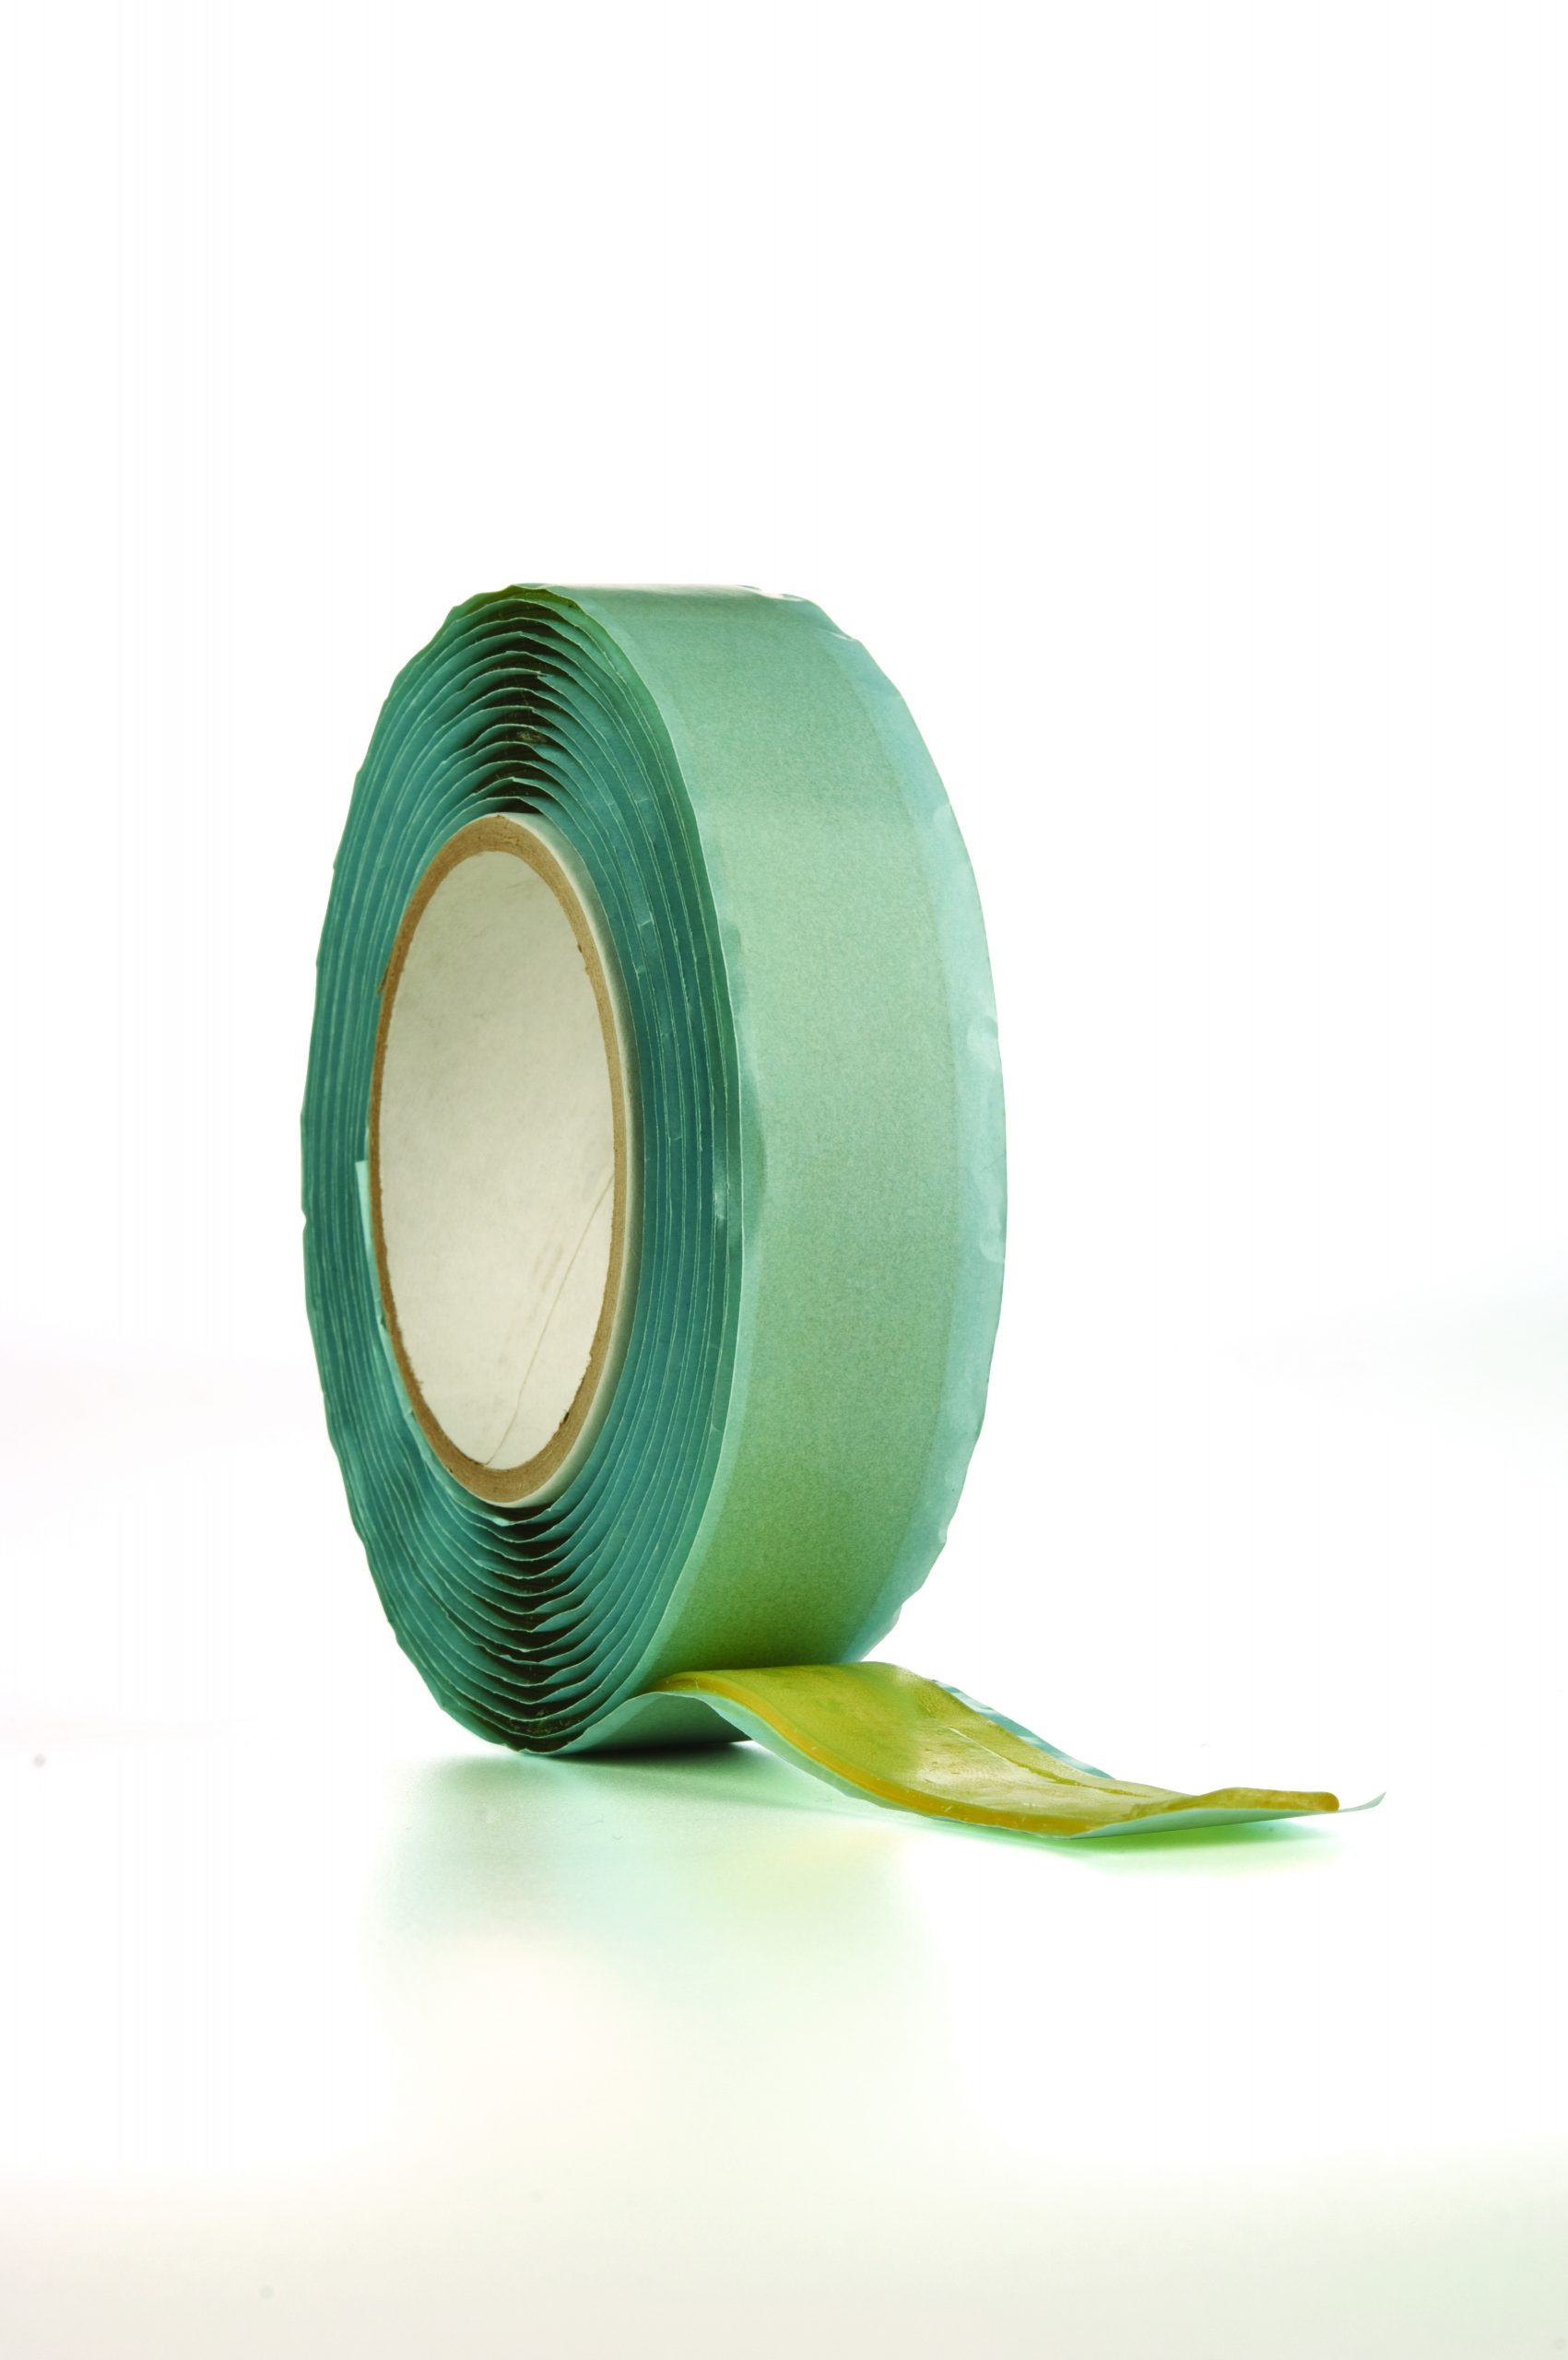 Adhesive resin / tape